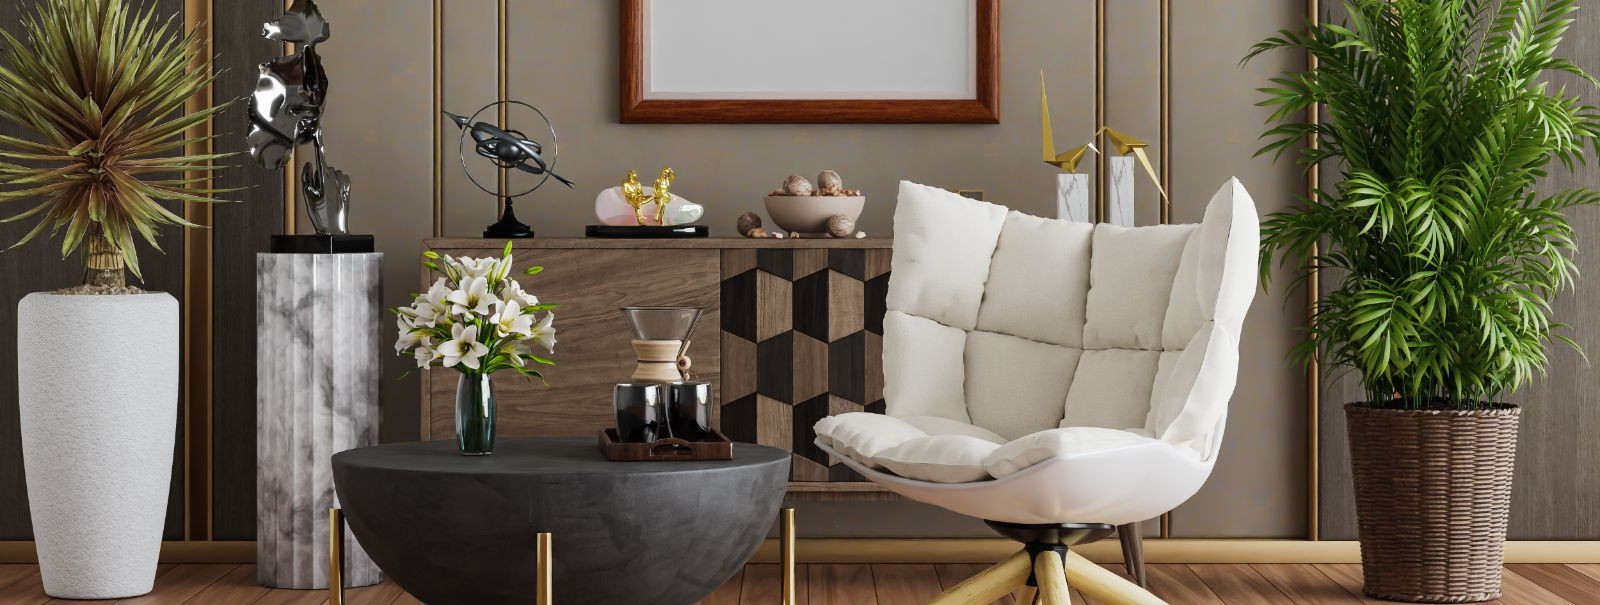 Erilahendustega mööbli disain on kunstivorm, mis muudab kliendi ...